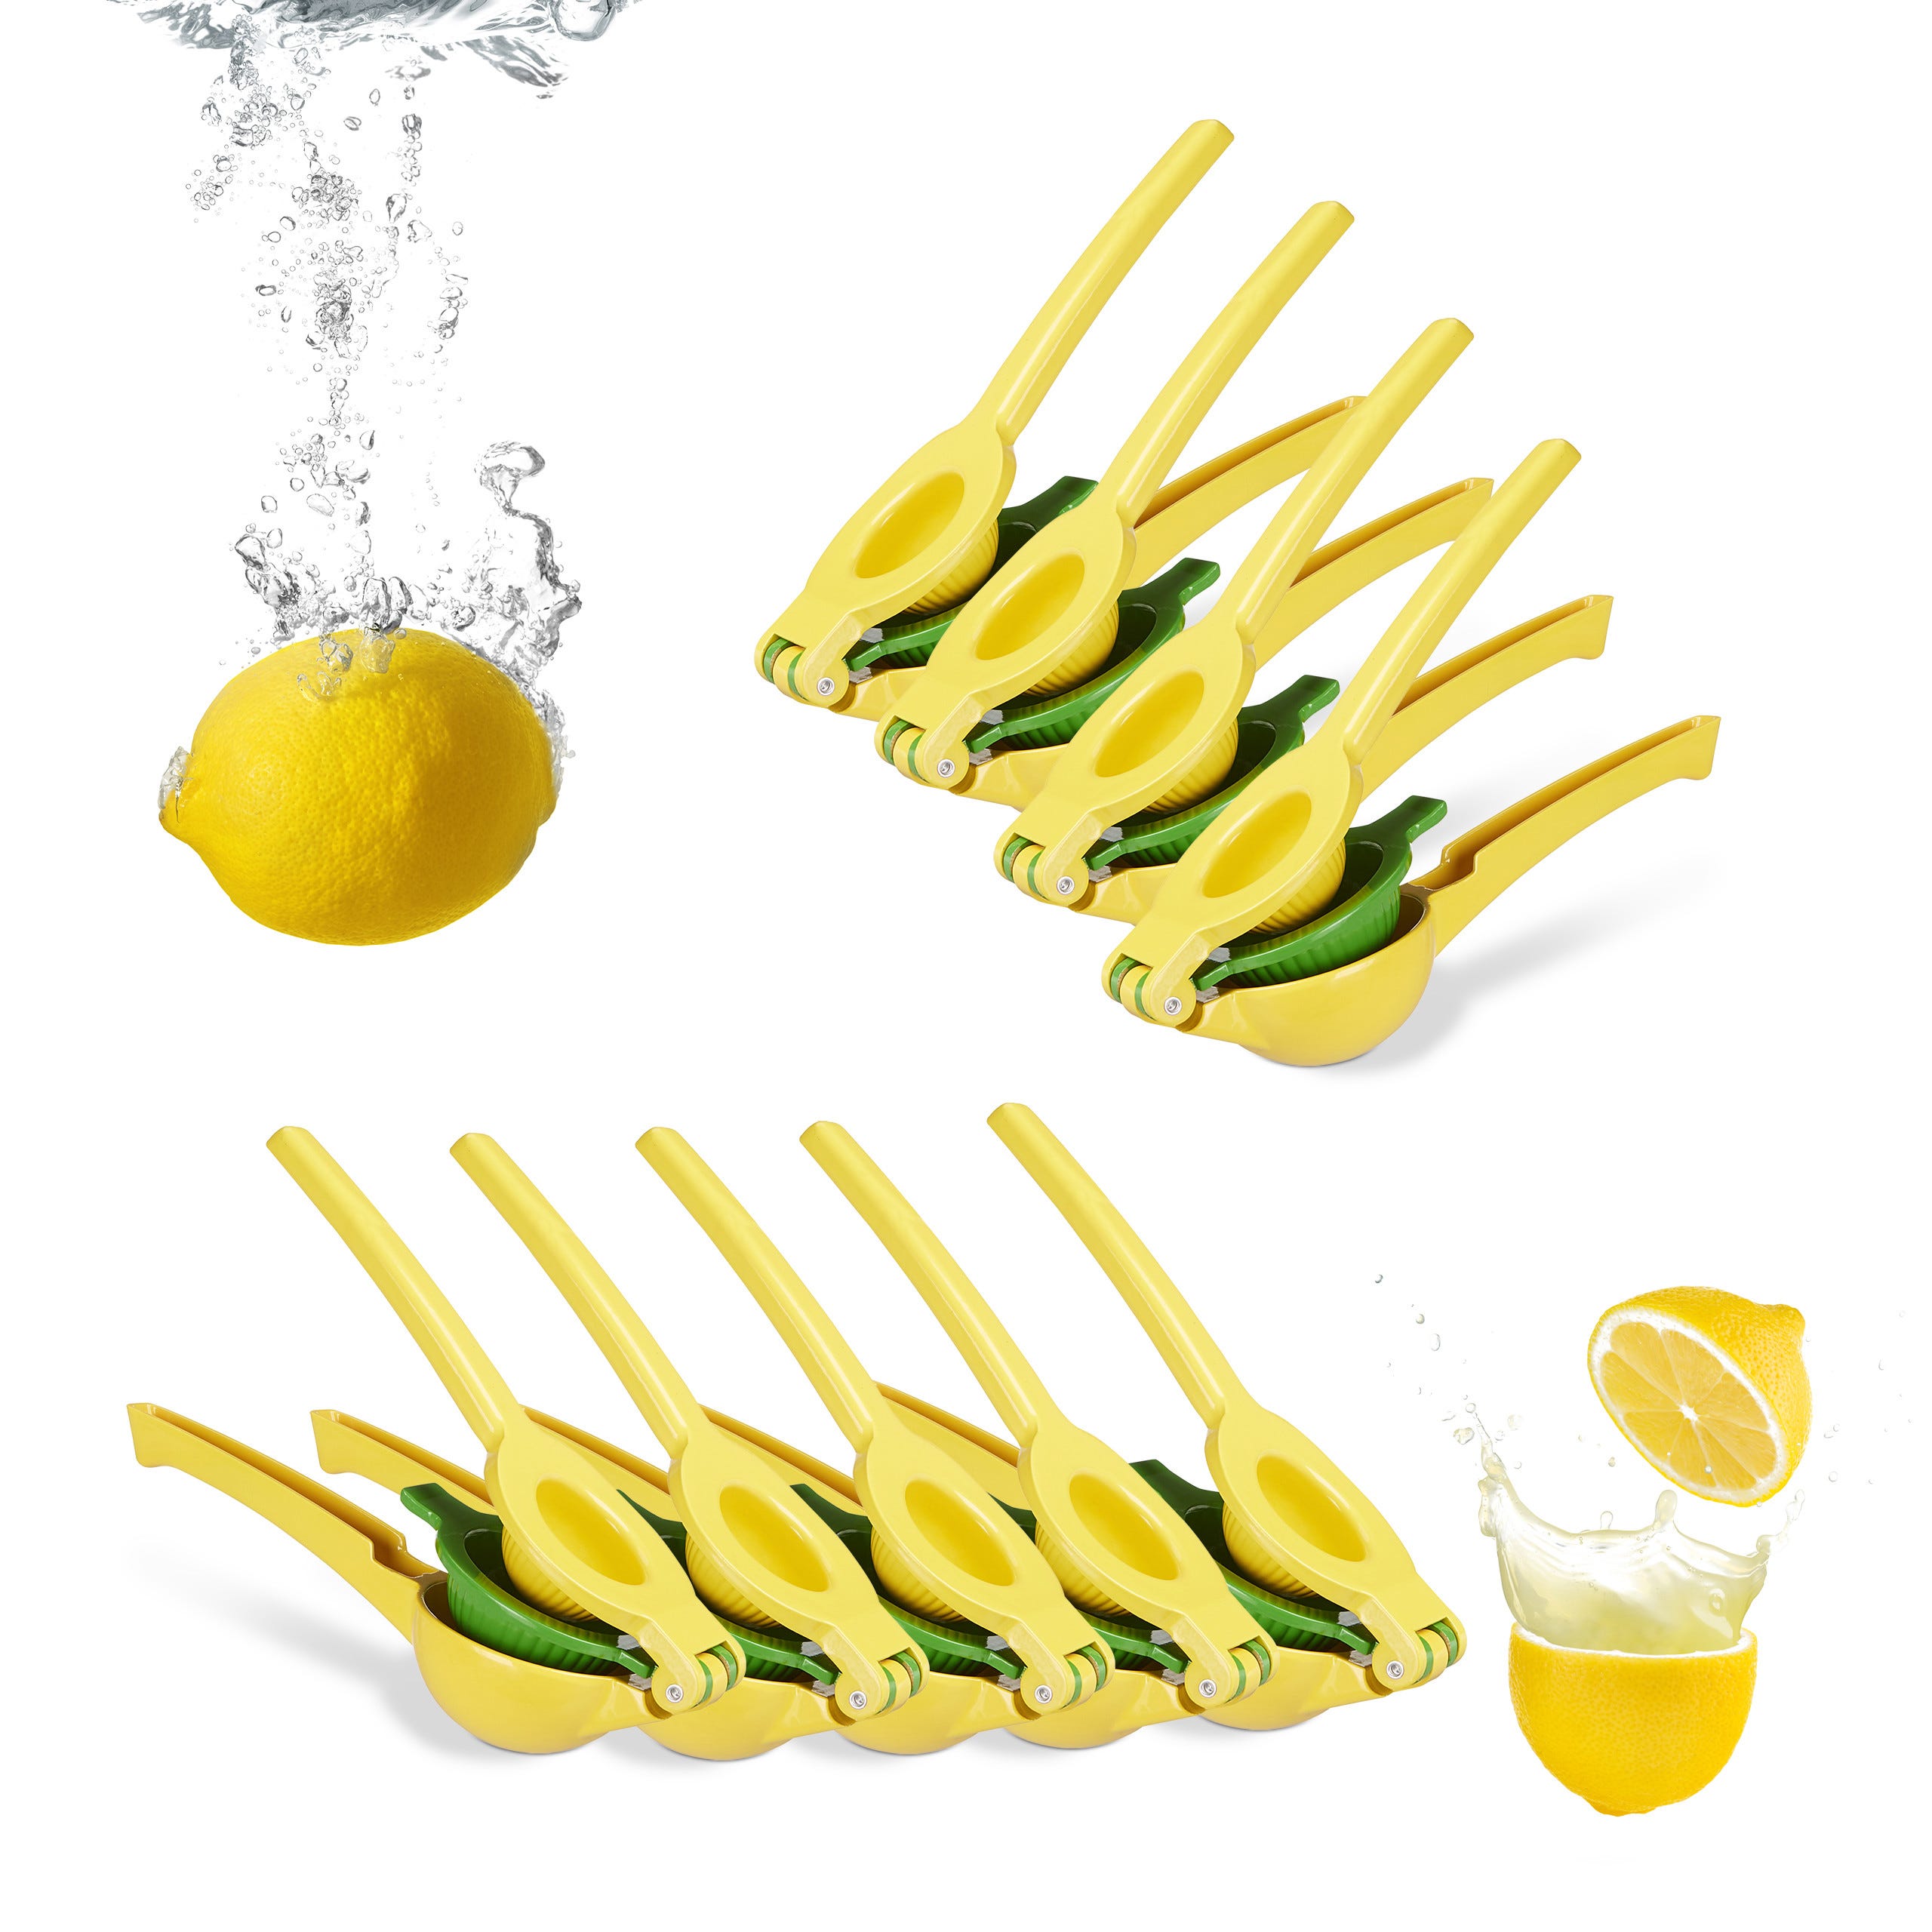 MOON-Citron presse x 4 table usage presse à main citron extracteur